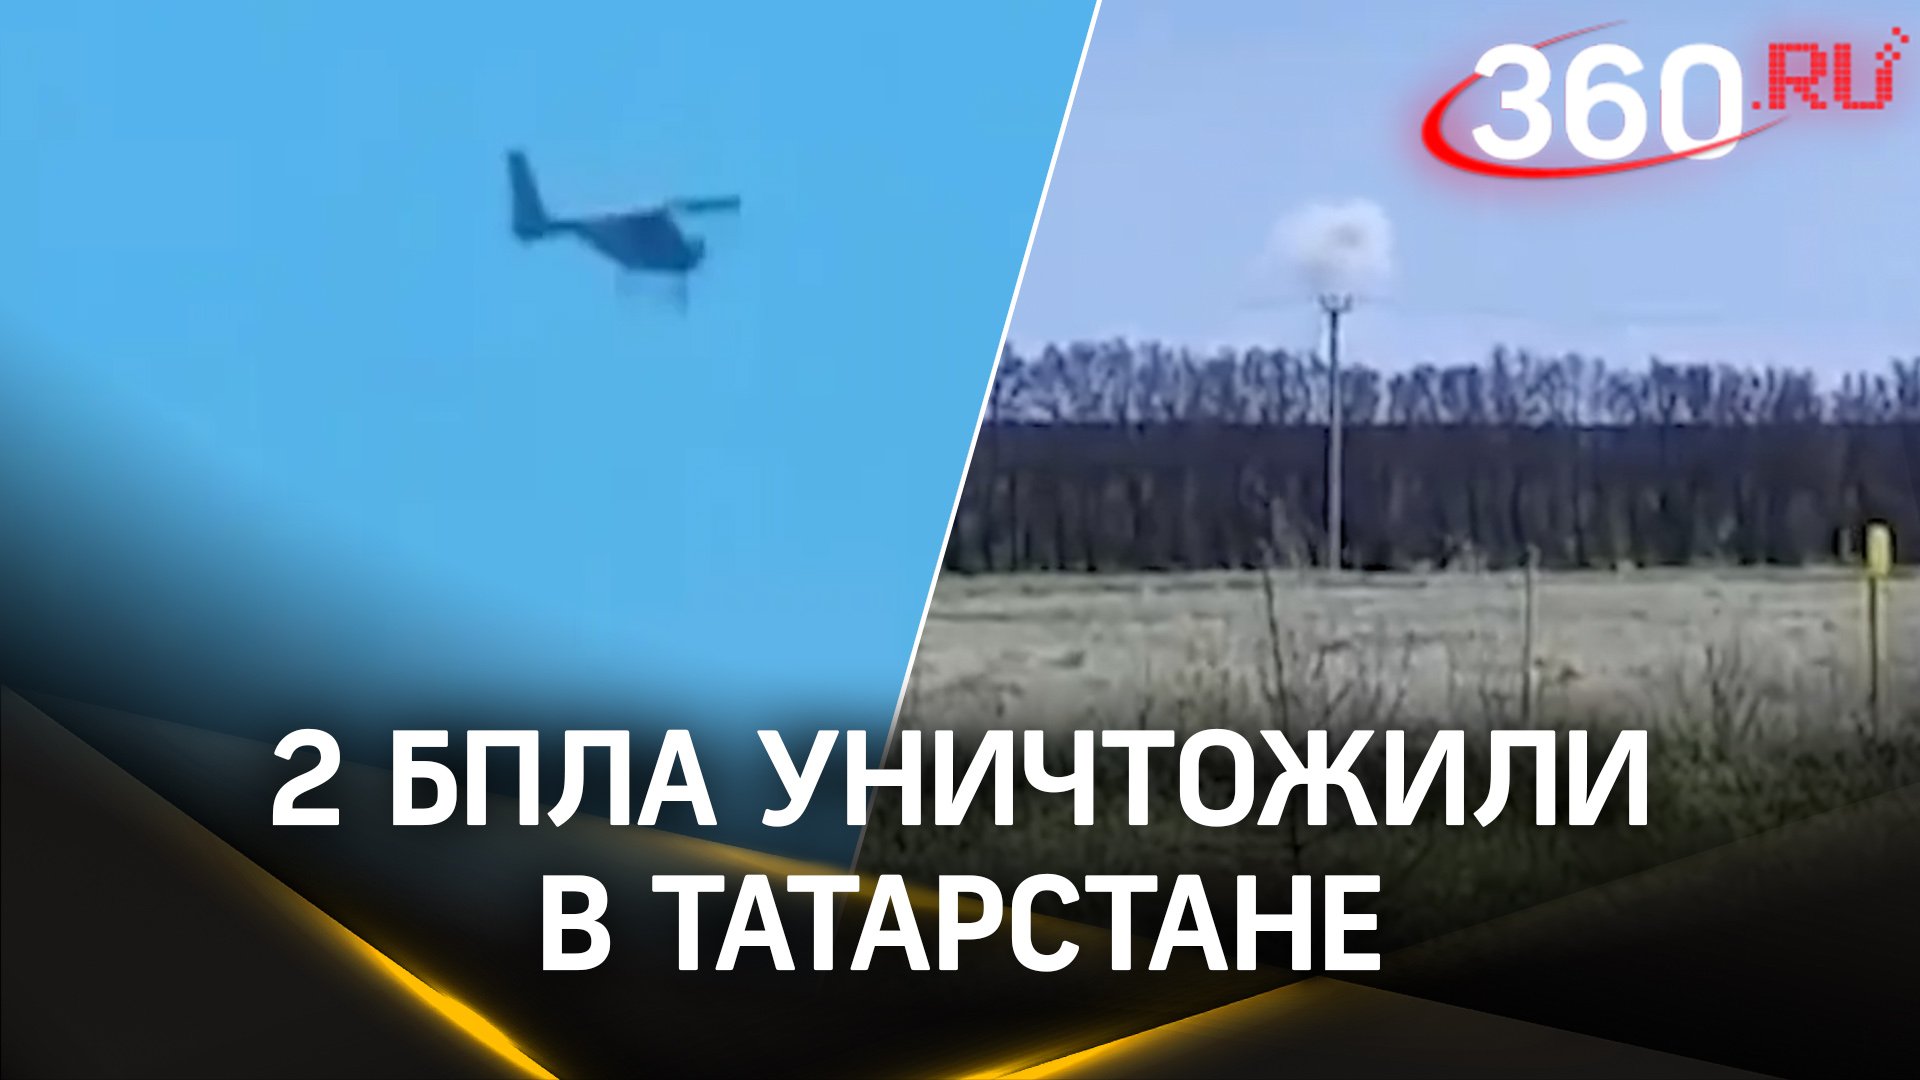 В Татарстане уничтожили 2 украинских БПЛА